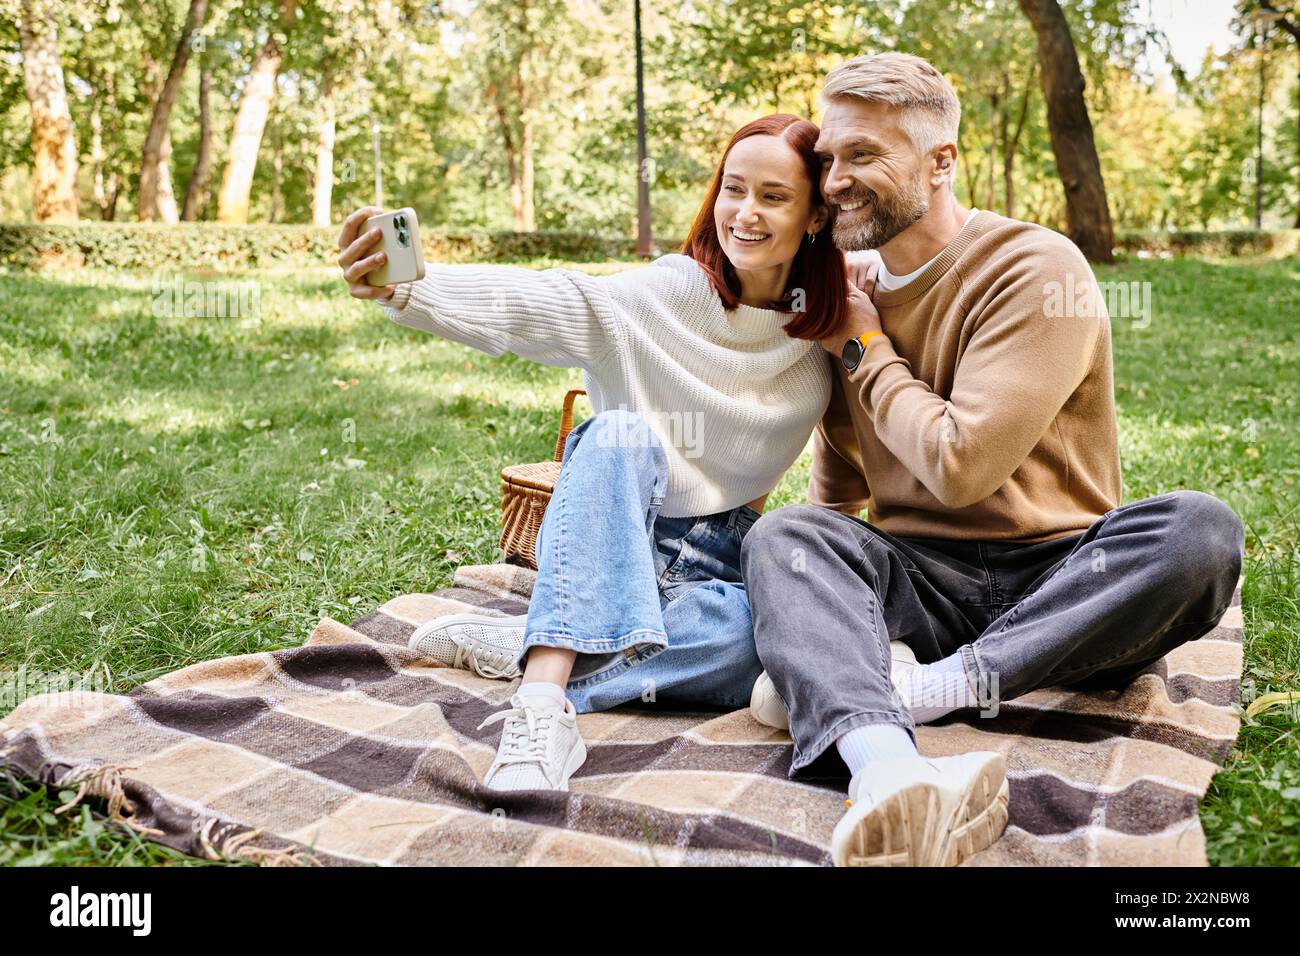 Mann und Frau im Park, sitzen auf einer Decke, fangen den Moment mit Selfie ein. Stockfoto